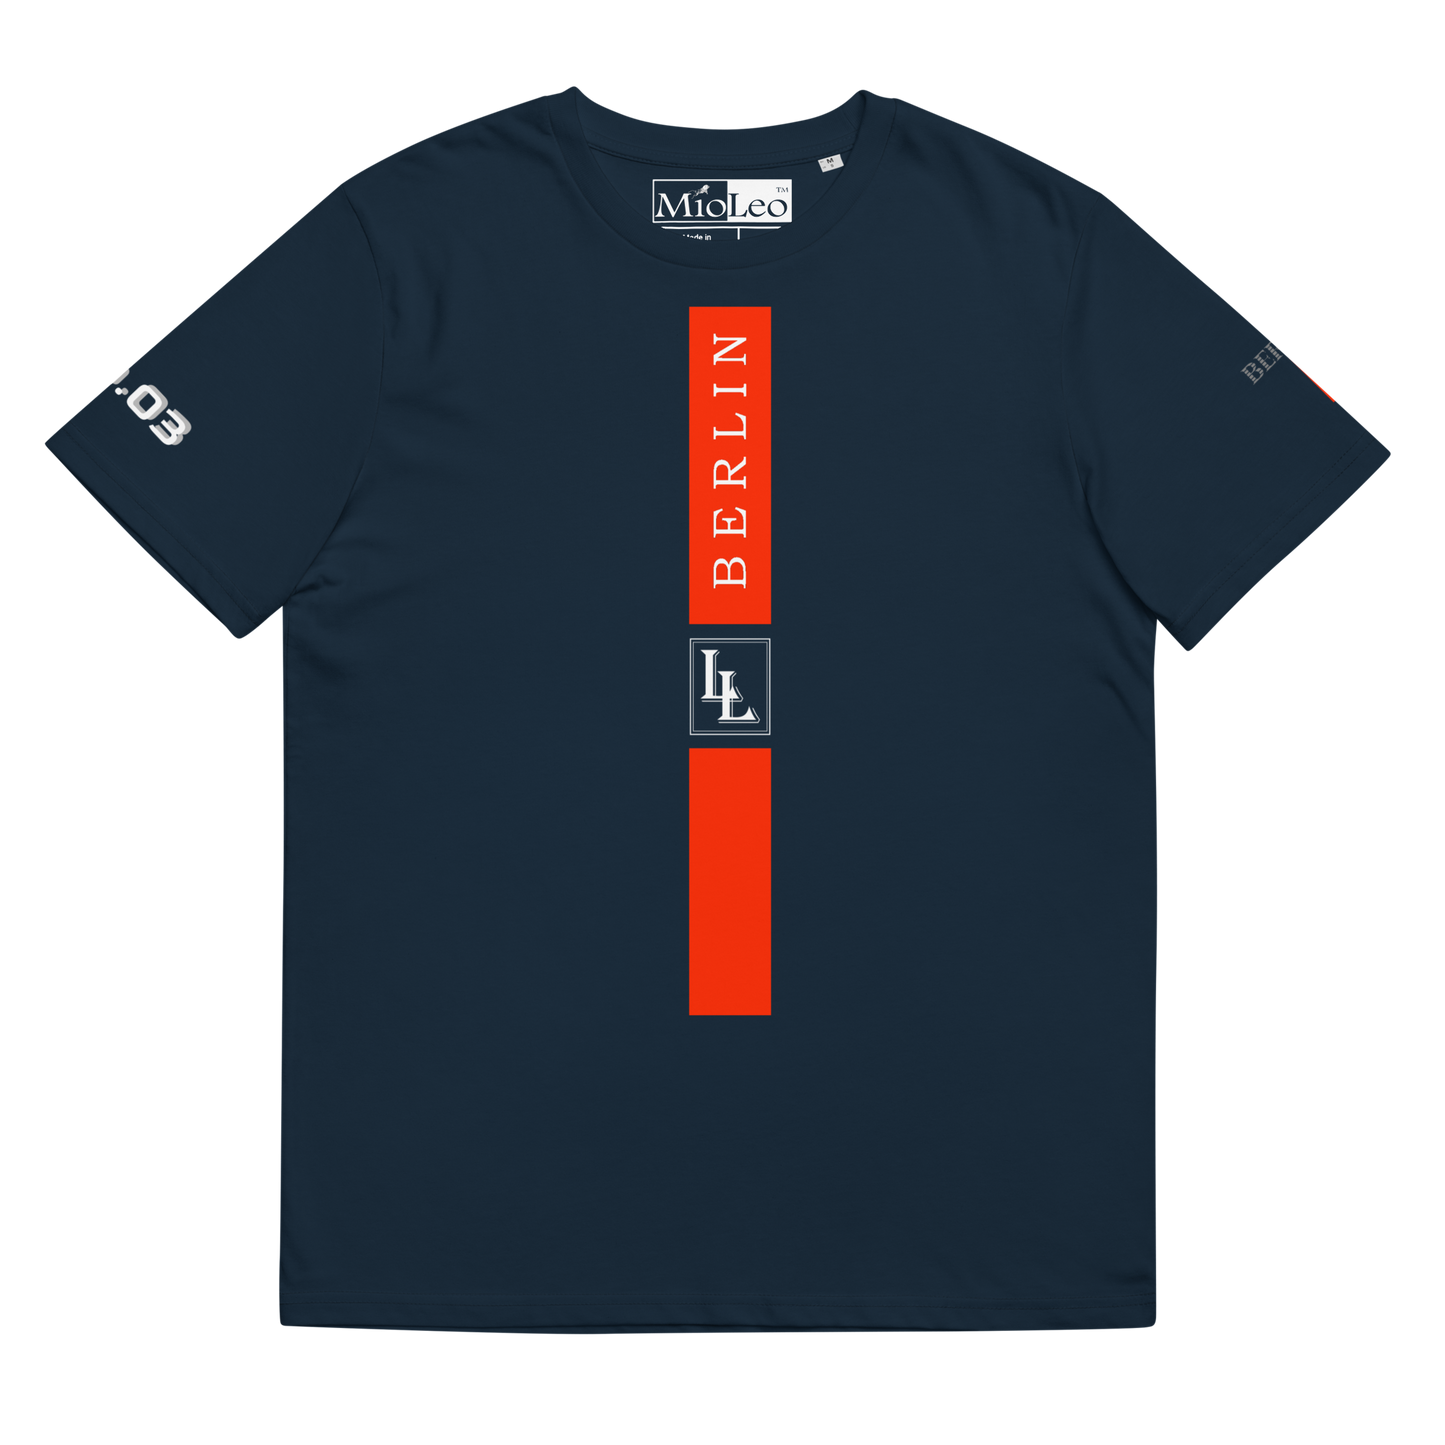 Unisex T-Shirt Black-Line No.03/2 "1 of 5K" by Léon LeRef